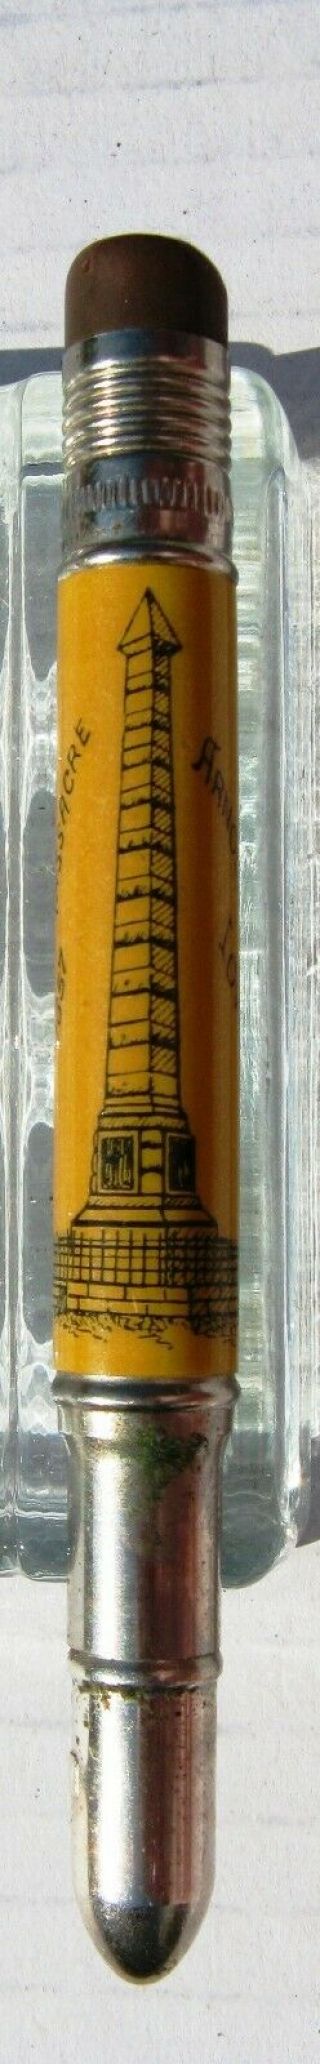 Vintage Bullet Pencil - Monument of 1857 Indian Massacre Arnold ' s Park Iowa 2